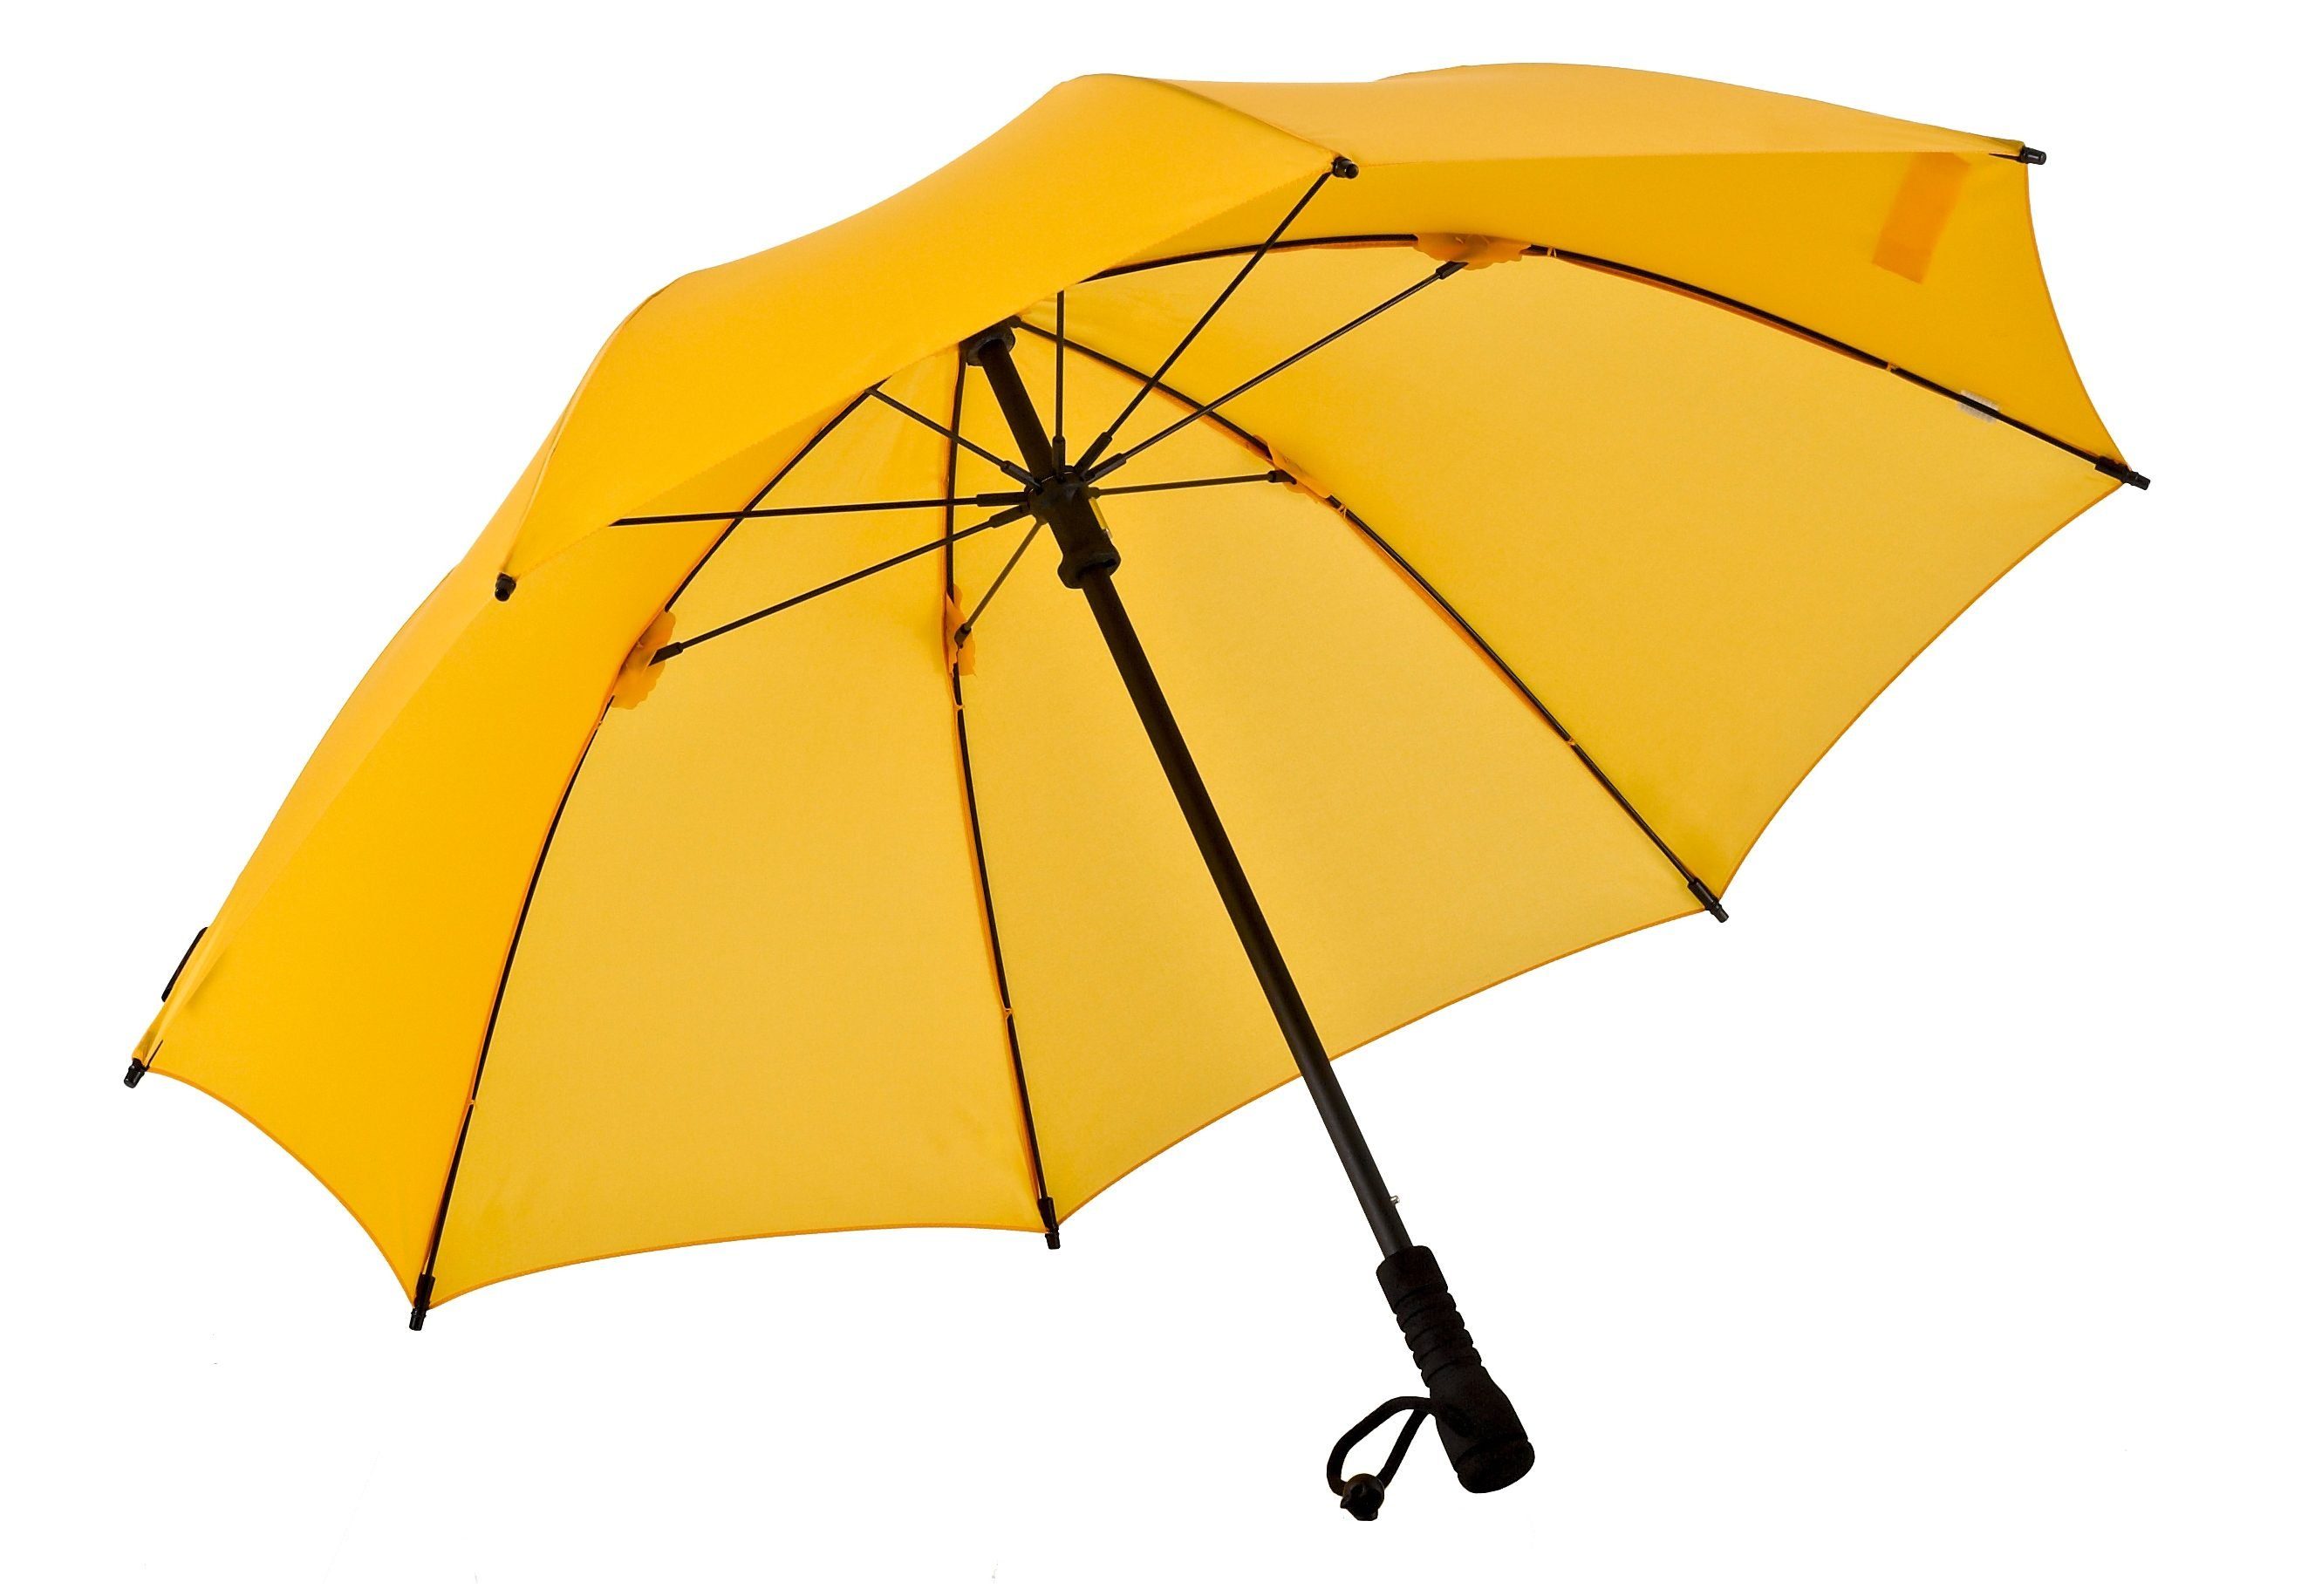 Stockregenschirm EuroSCHIRM® Swing gelb